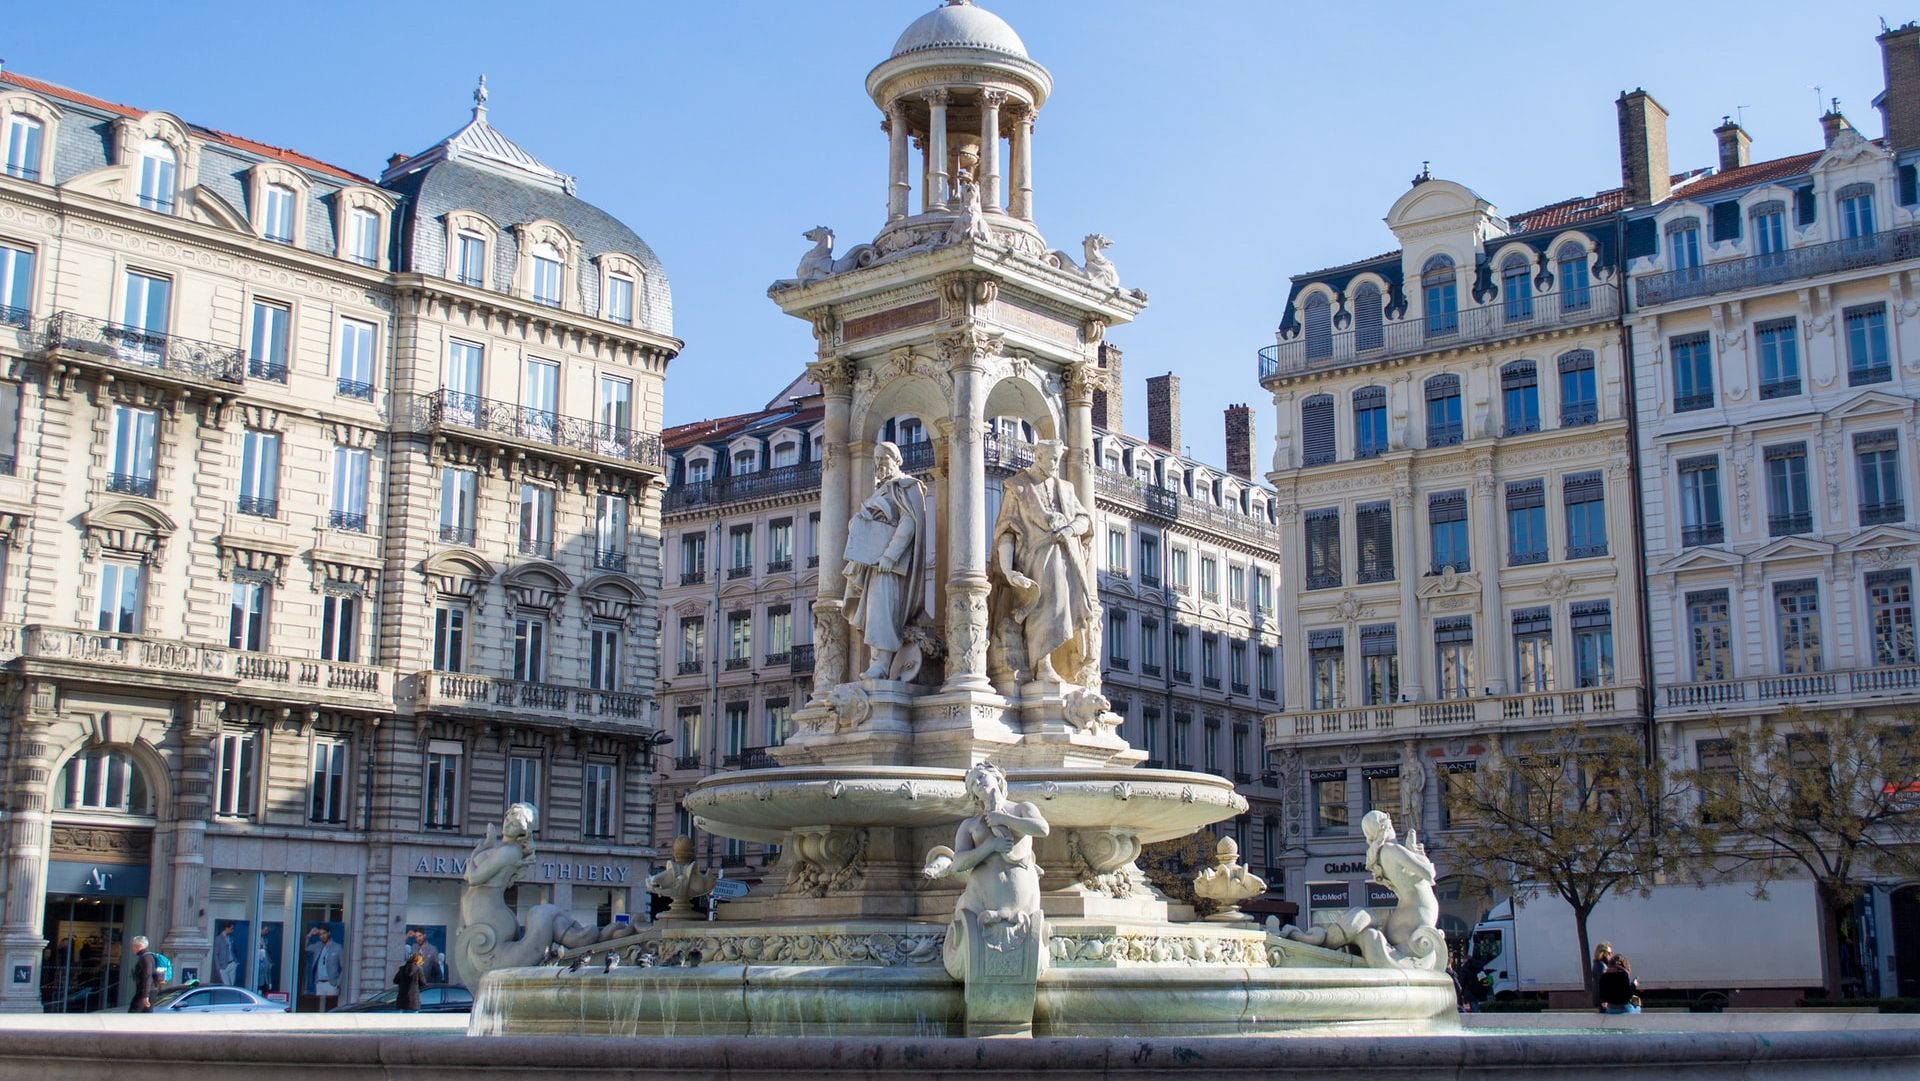 Situada en el corazón de Lyon, la Presqu'île es una zona apasionante repleta de atracciones y fabulosos hoteles. Es la mejor zona para alojarse en Lyon para quienes la visitan por primera vez. Nuestro hotel favorito de este barrio es Hôtel de l'Abbaye.